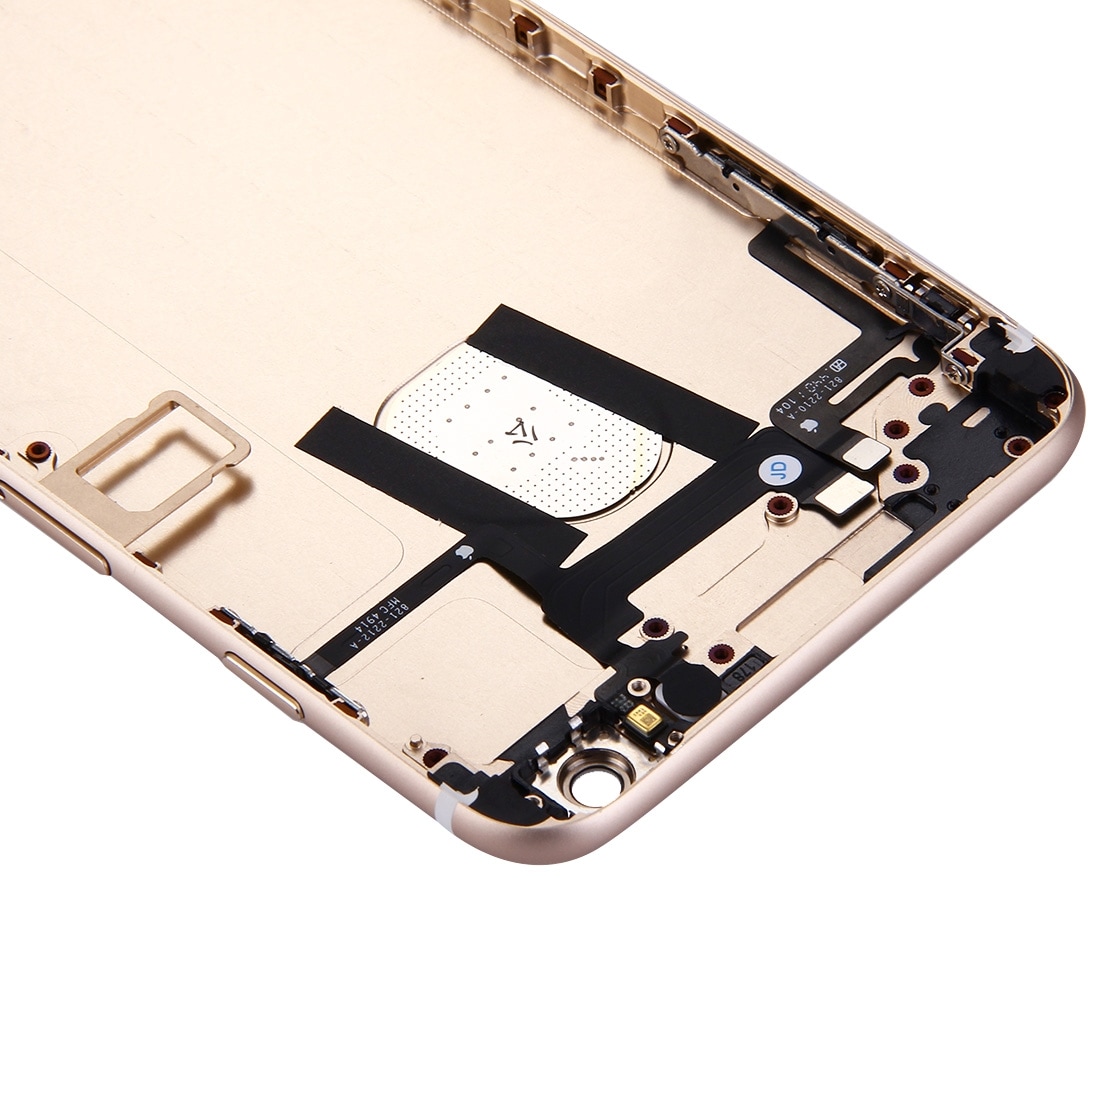 Komplett skallbytte iPhone 6 Plus -Gull